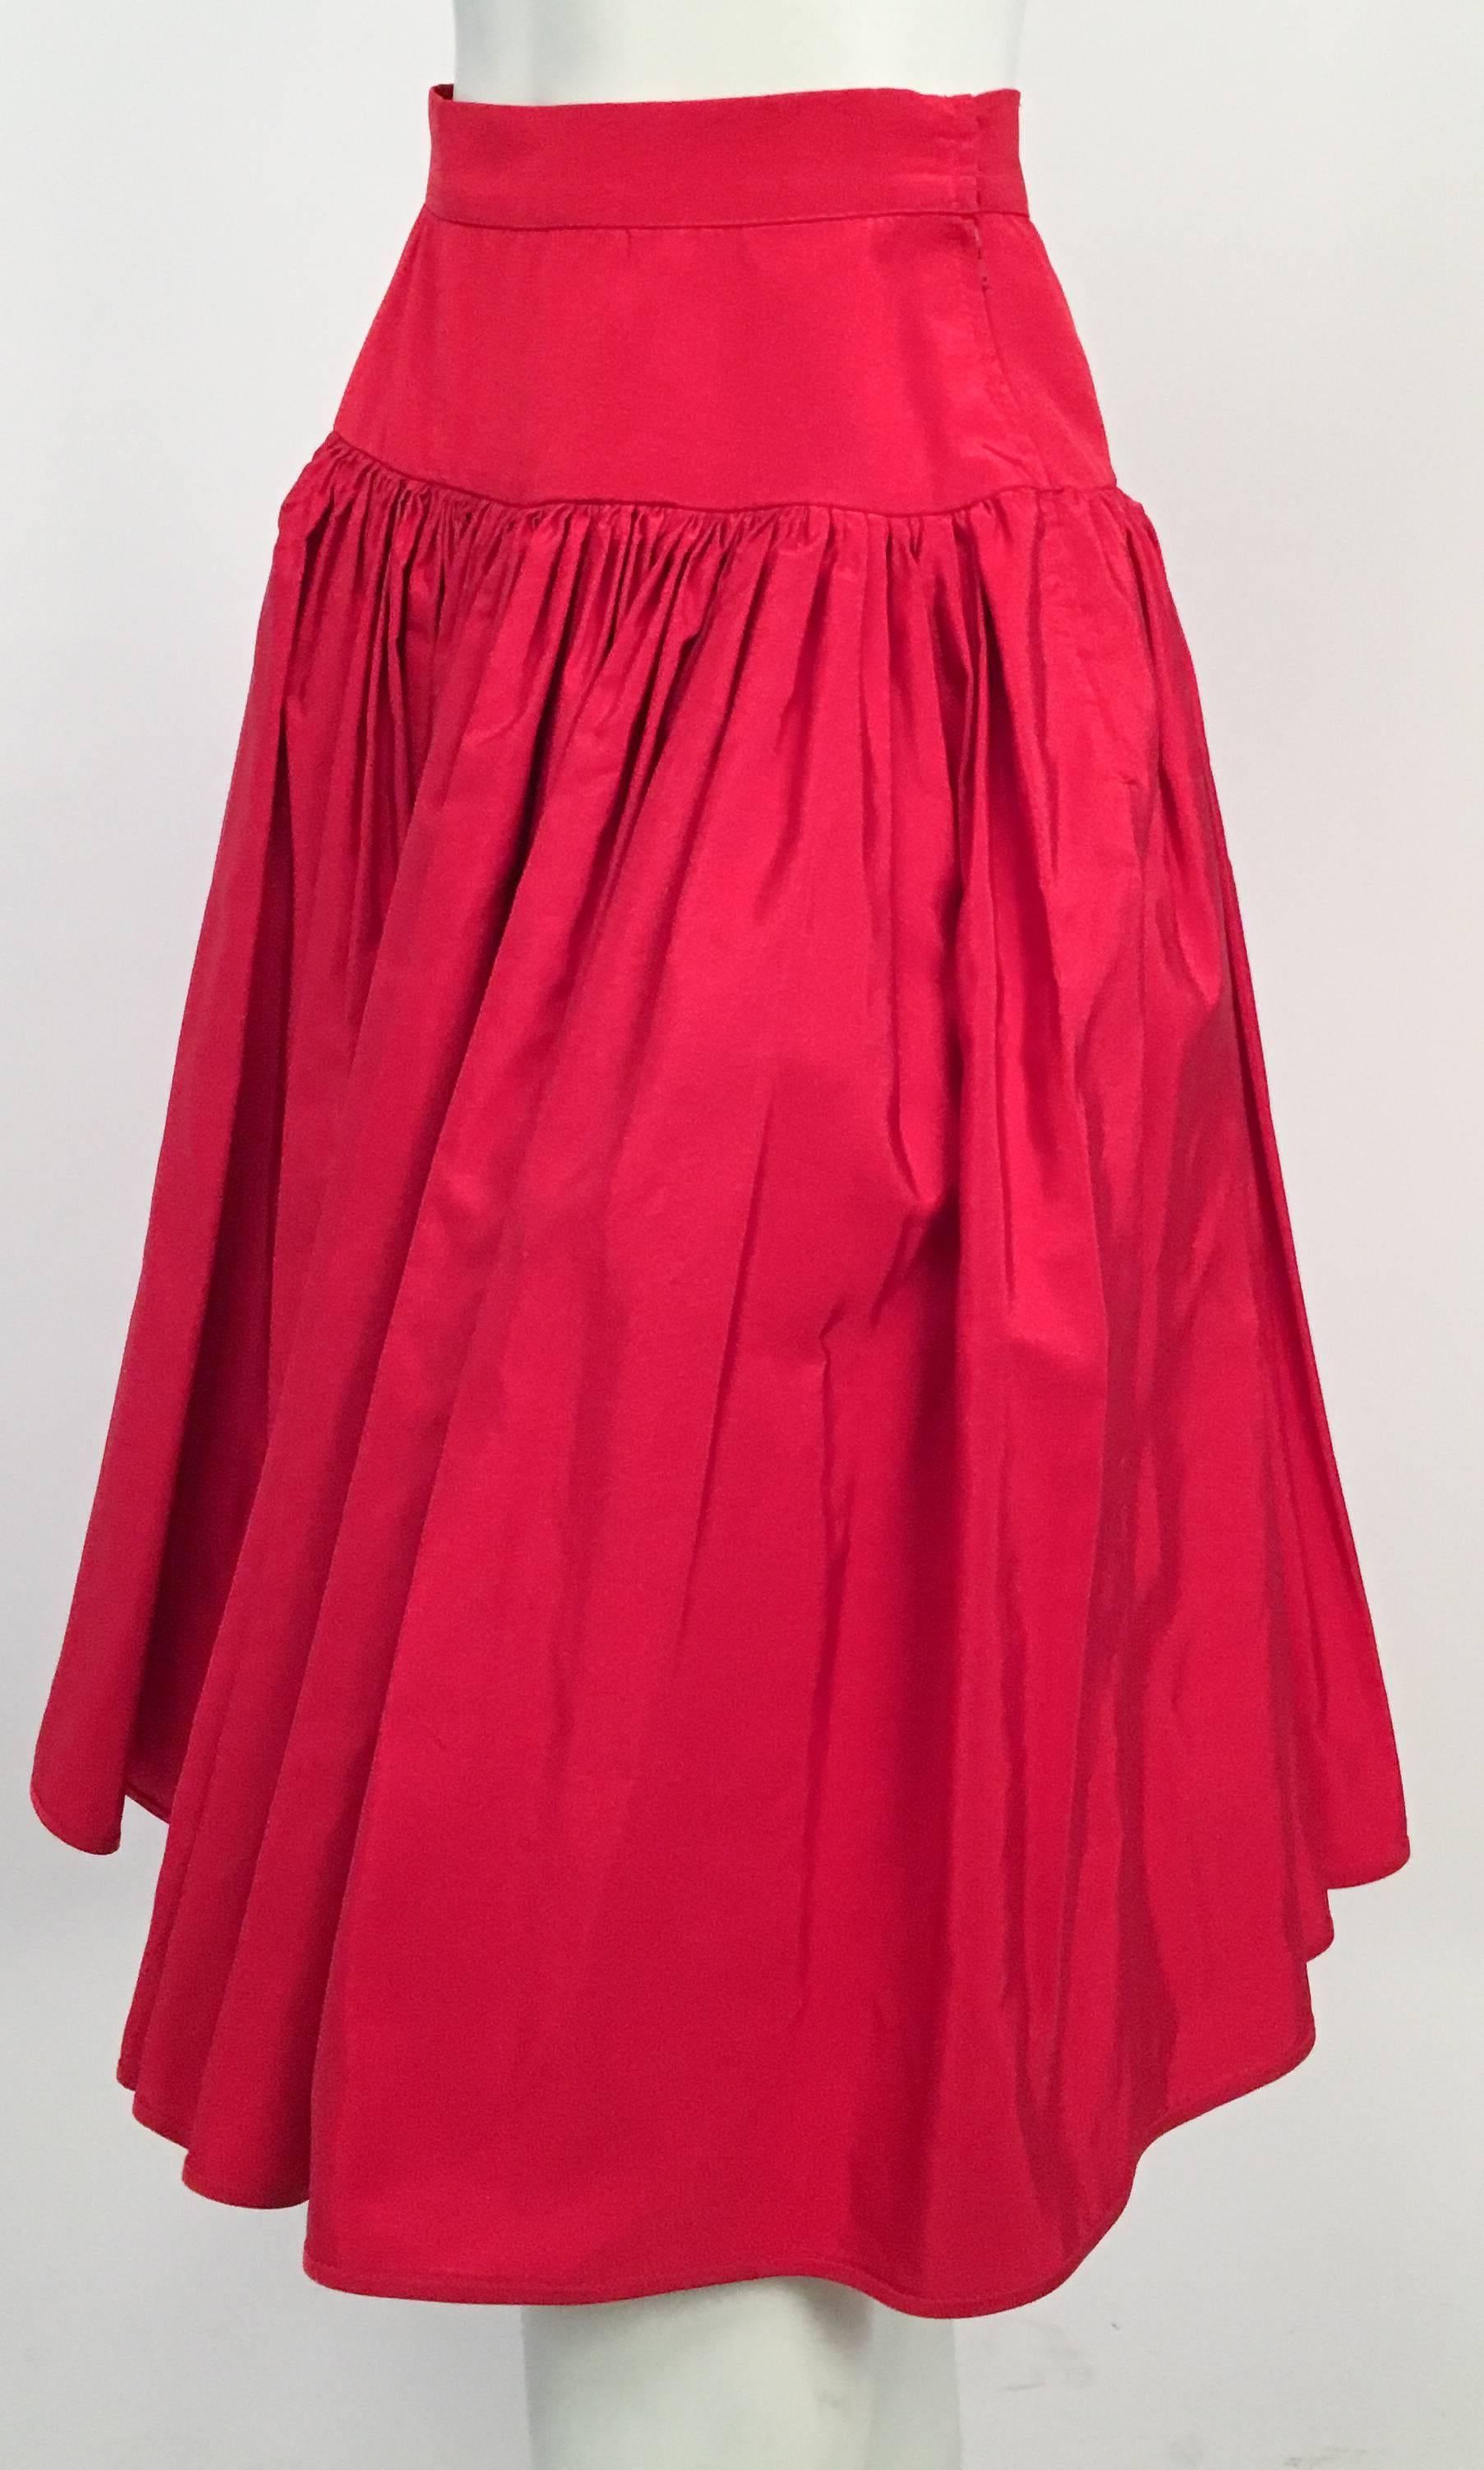 80s Valentino Night Red Ruffled Skirt. Built in tulle underskirt. 